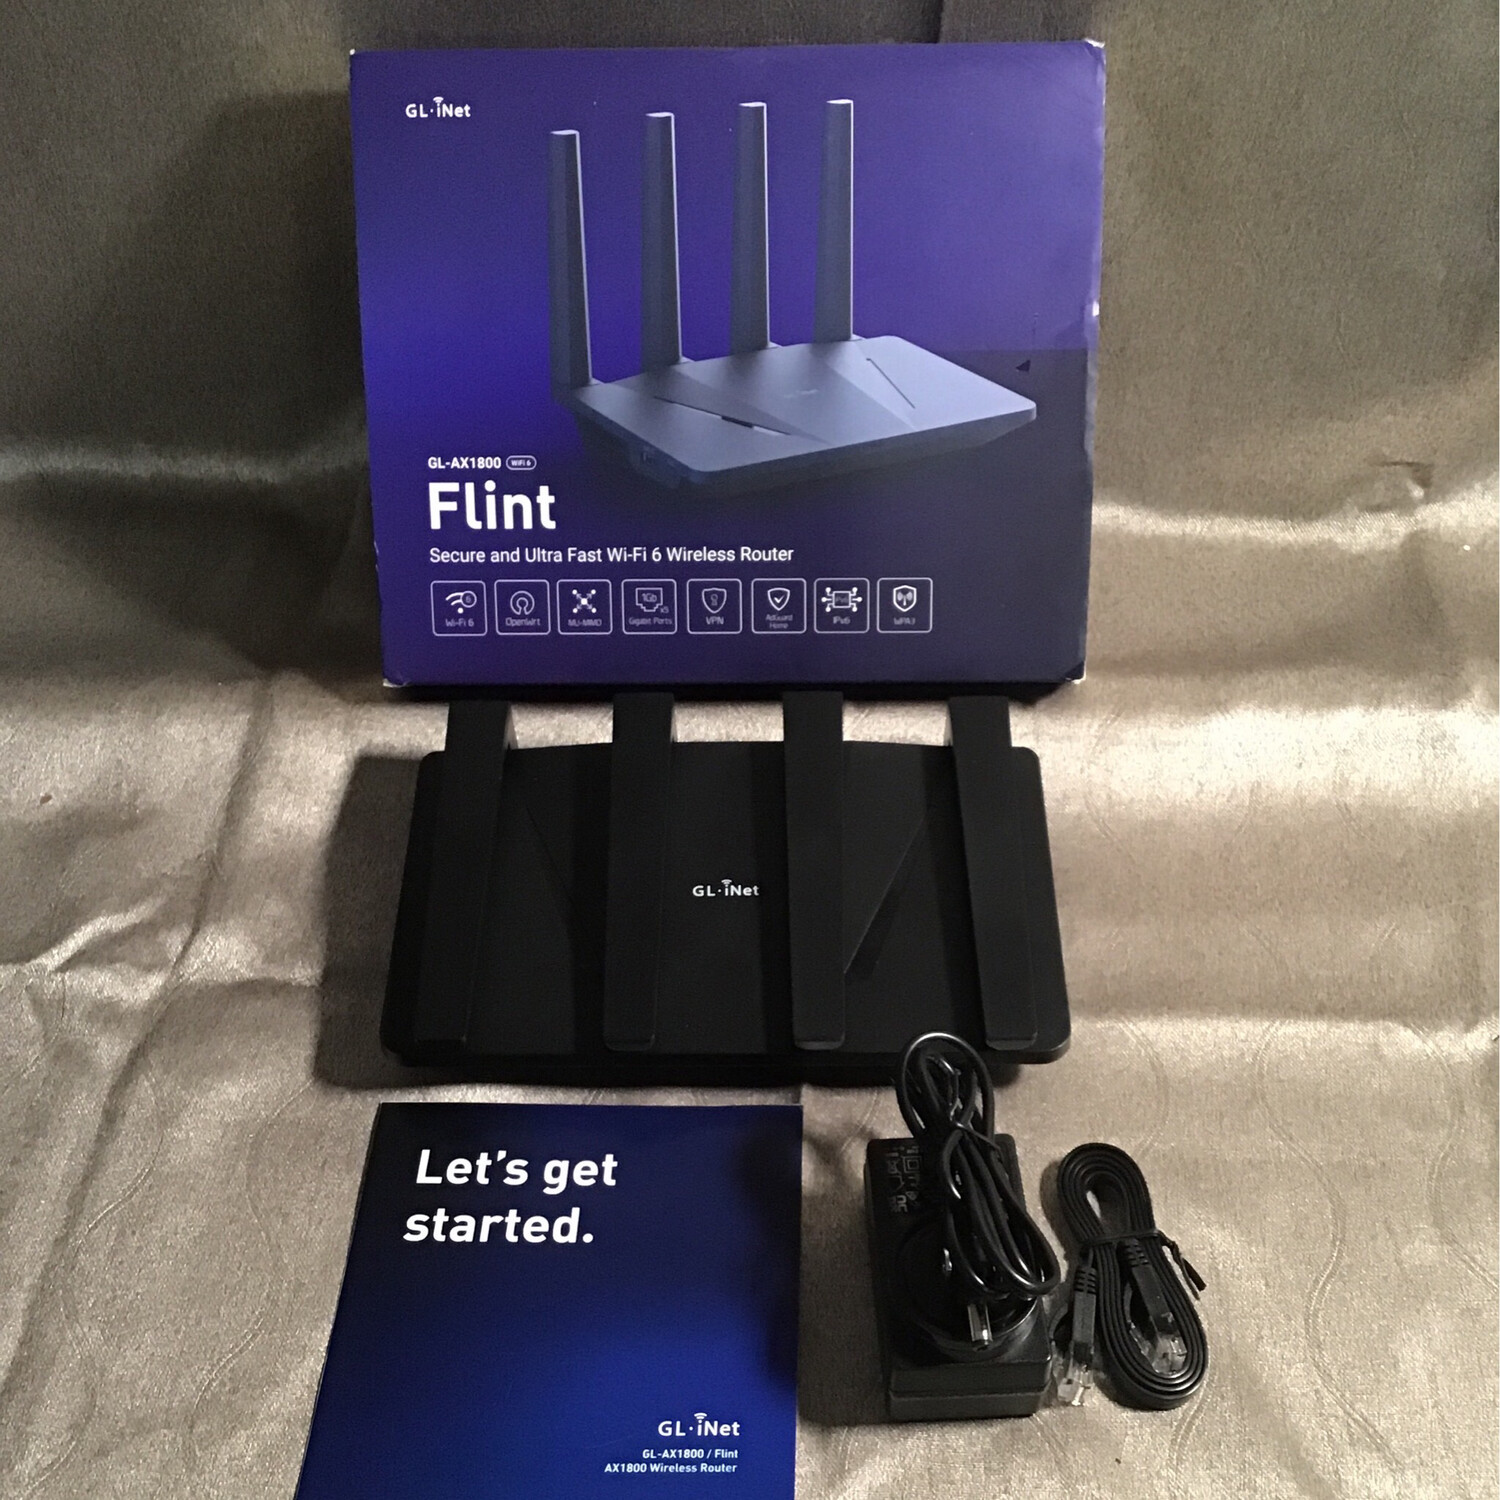 Flint GL_AX1800 Wi-Fi 6 Wireless Router